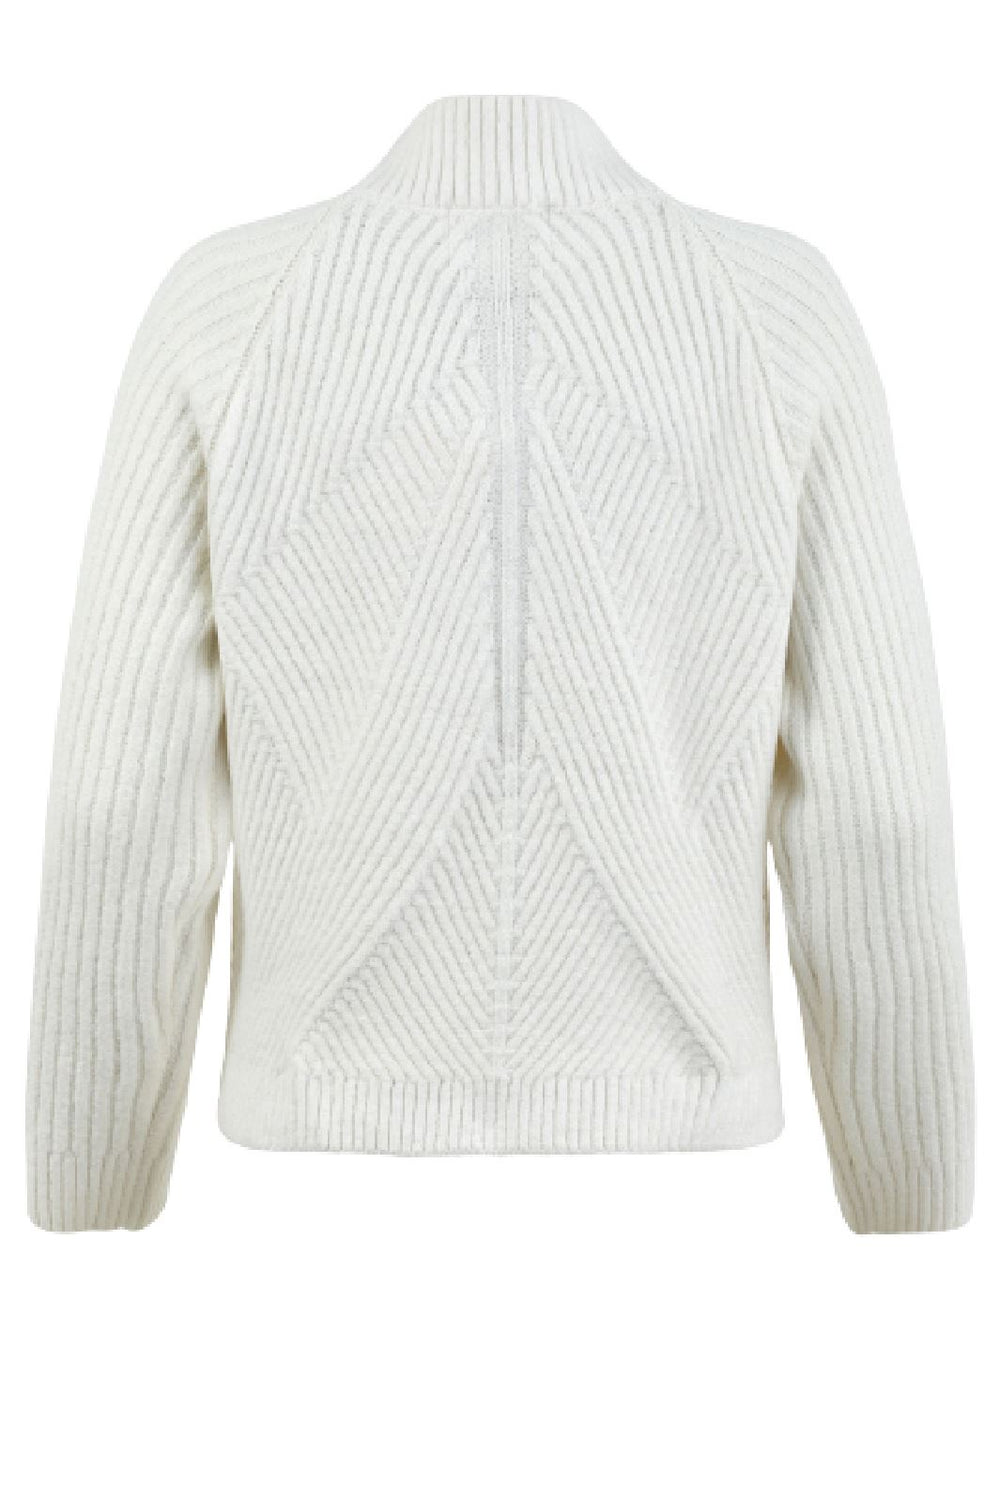 Sofie Schnoor - Snos416 Sweater - Off White Strikbluser 